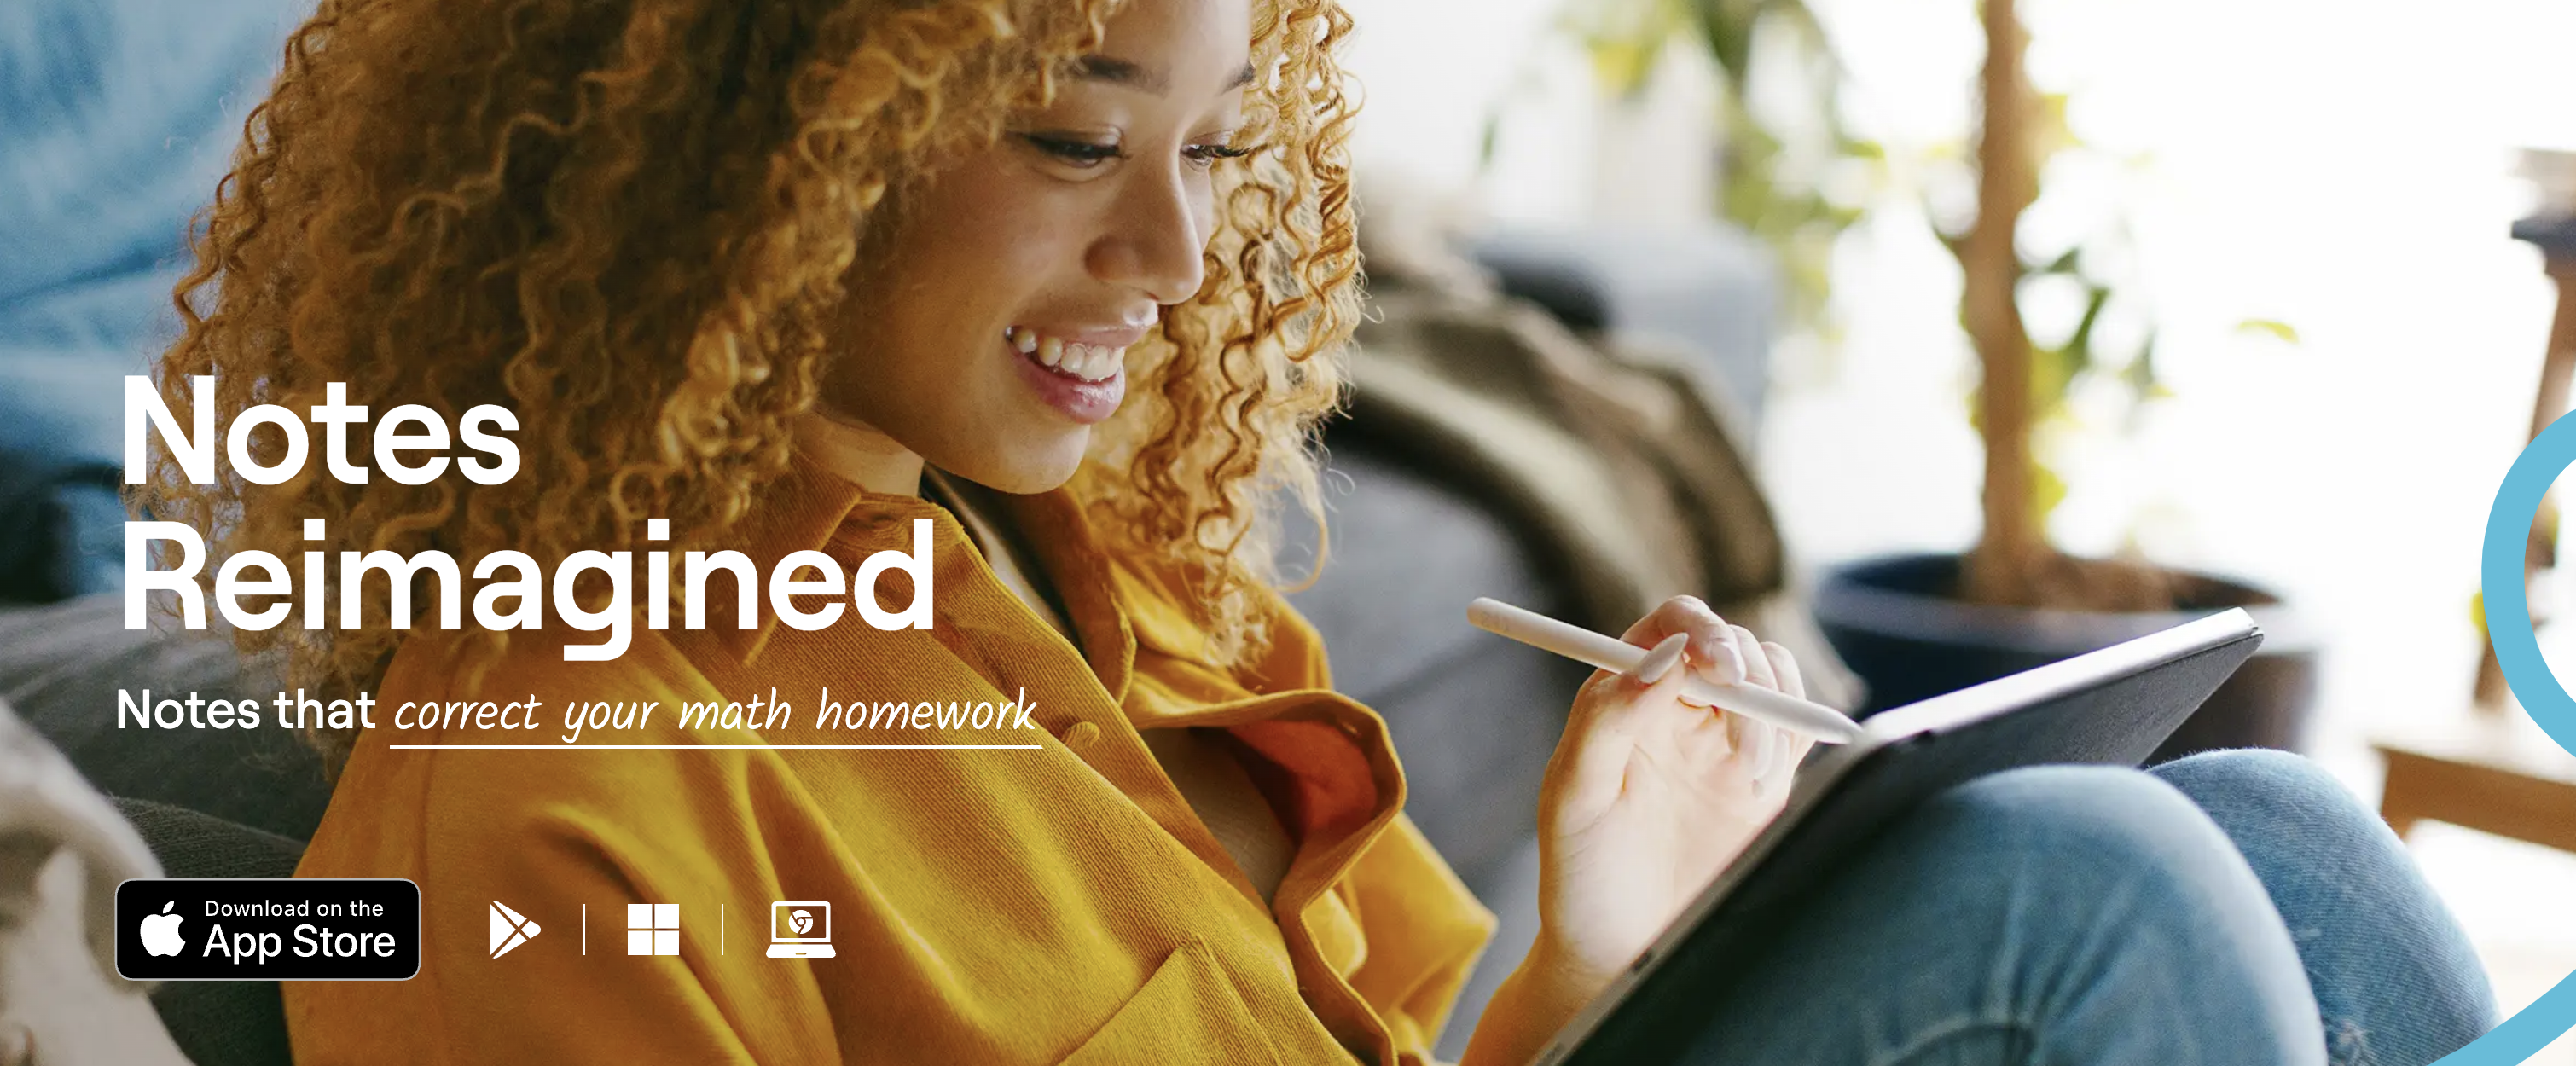 Obraz marketingowy firmy Goodnotes, na którym widać kobietę korzystającą z produktu na iPadzie.